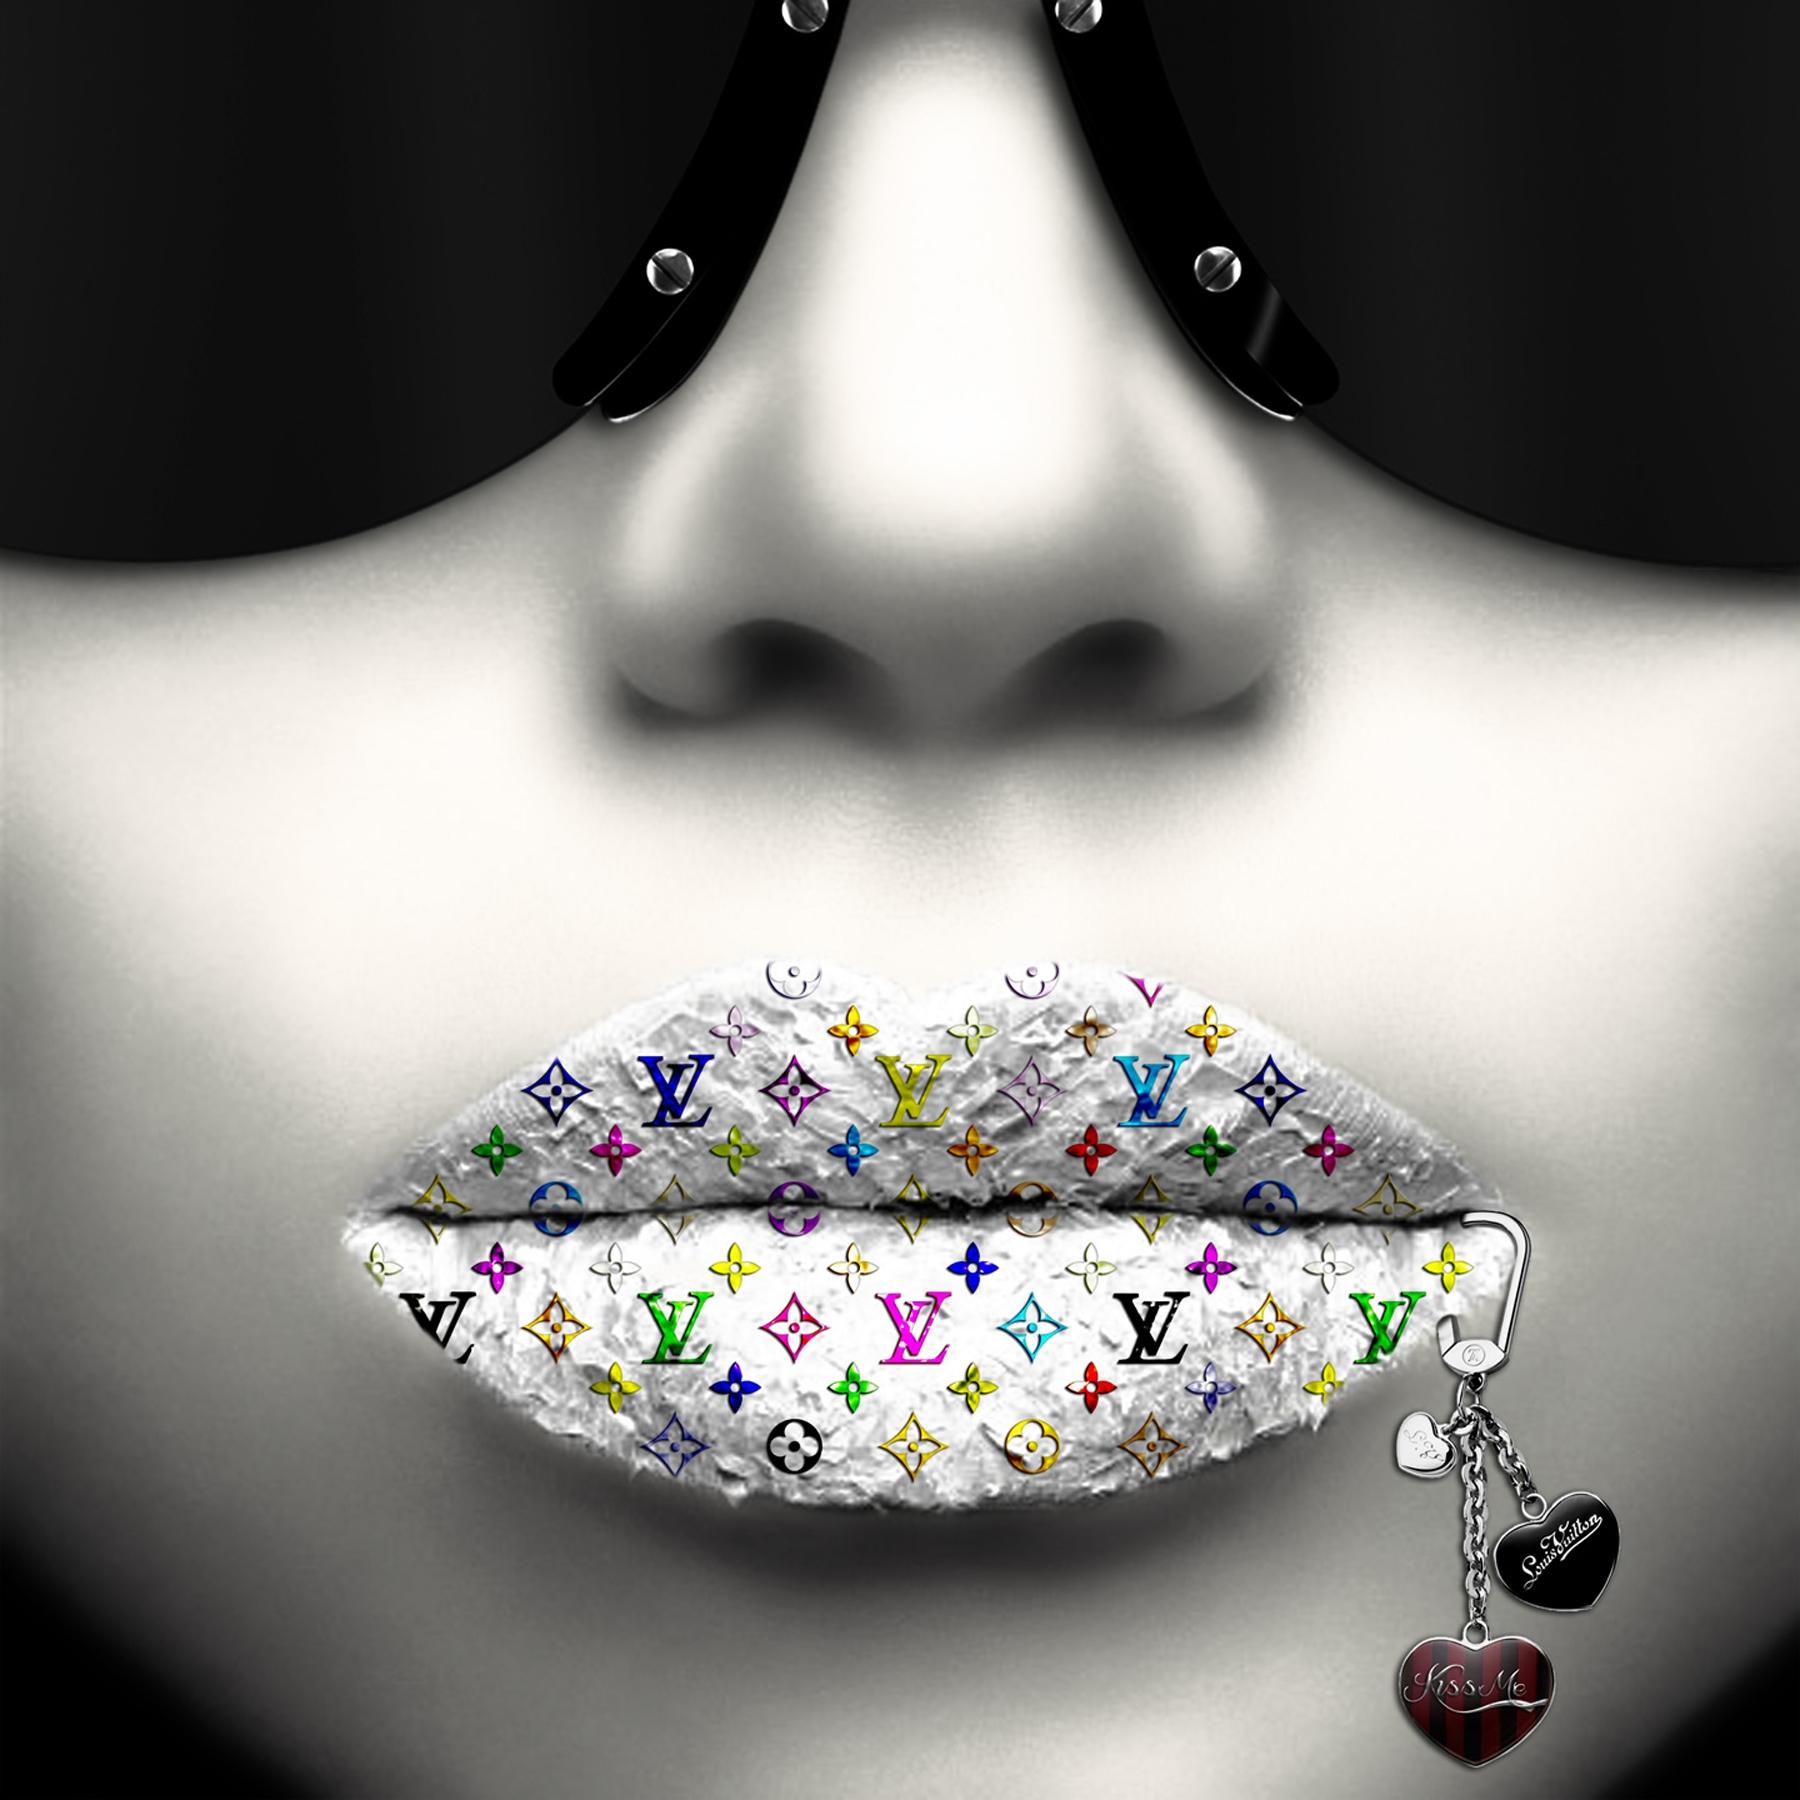 Fashionista Kiss Me Silver, numérique sur verre - Print de Jean Raphael